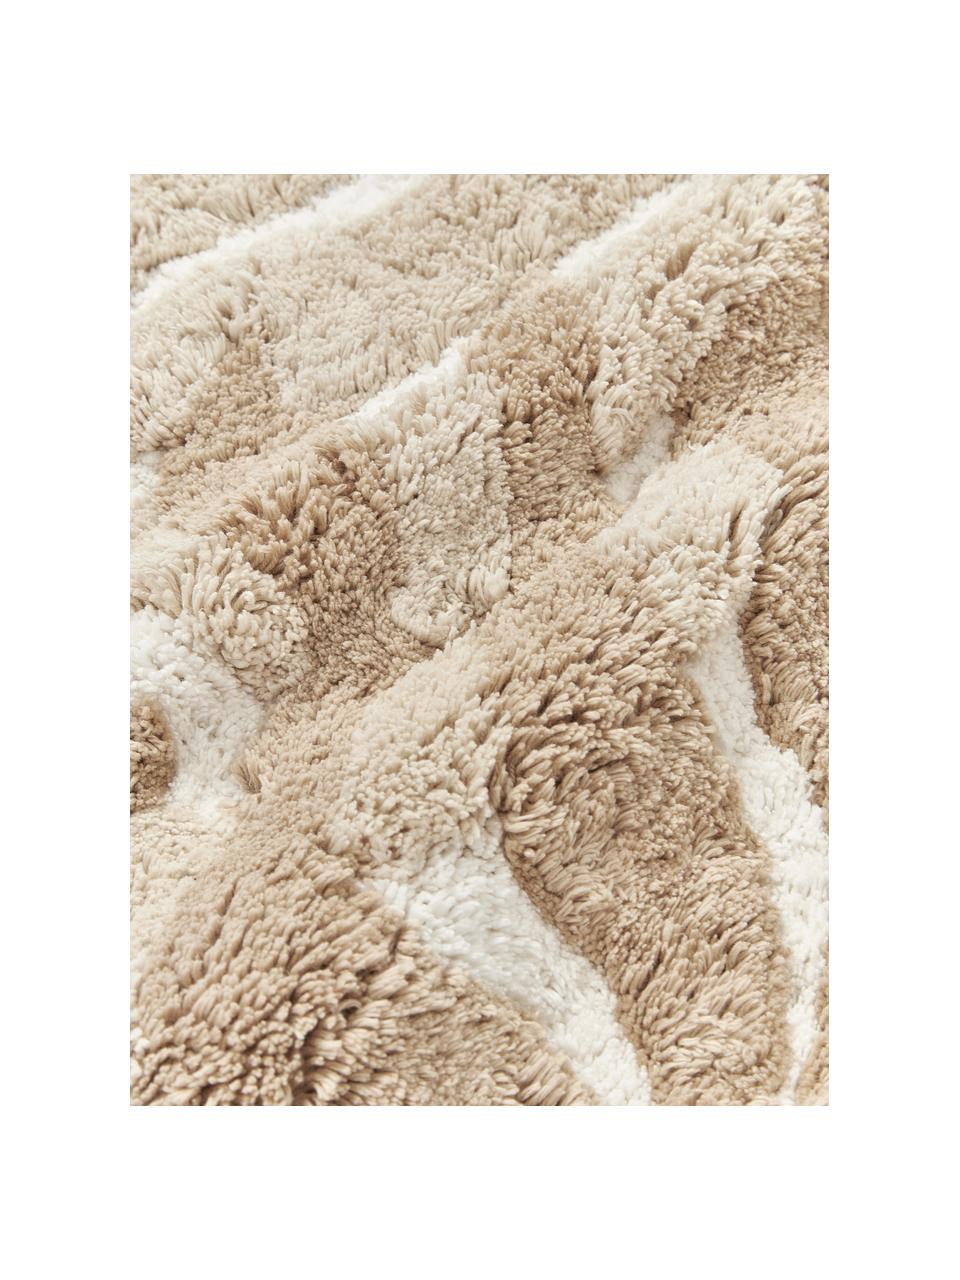 Federa arredo in cotone con motivo trapuntato foglie beige Sela, 100% cotone organico certificato BCI, Bianco crema, marrone, beige, Larg. 45 x Lung. 45 cm